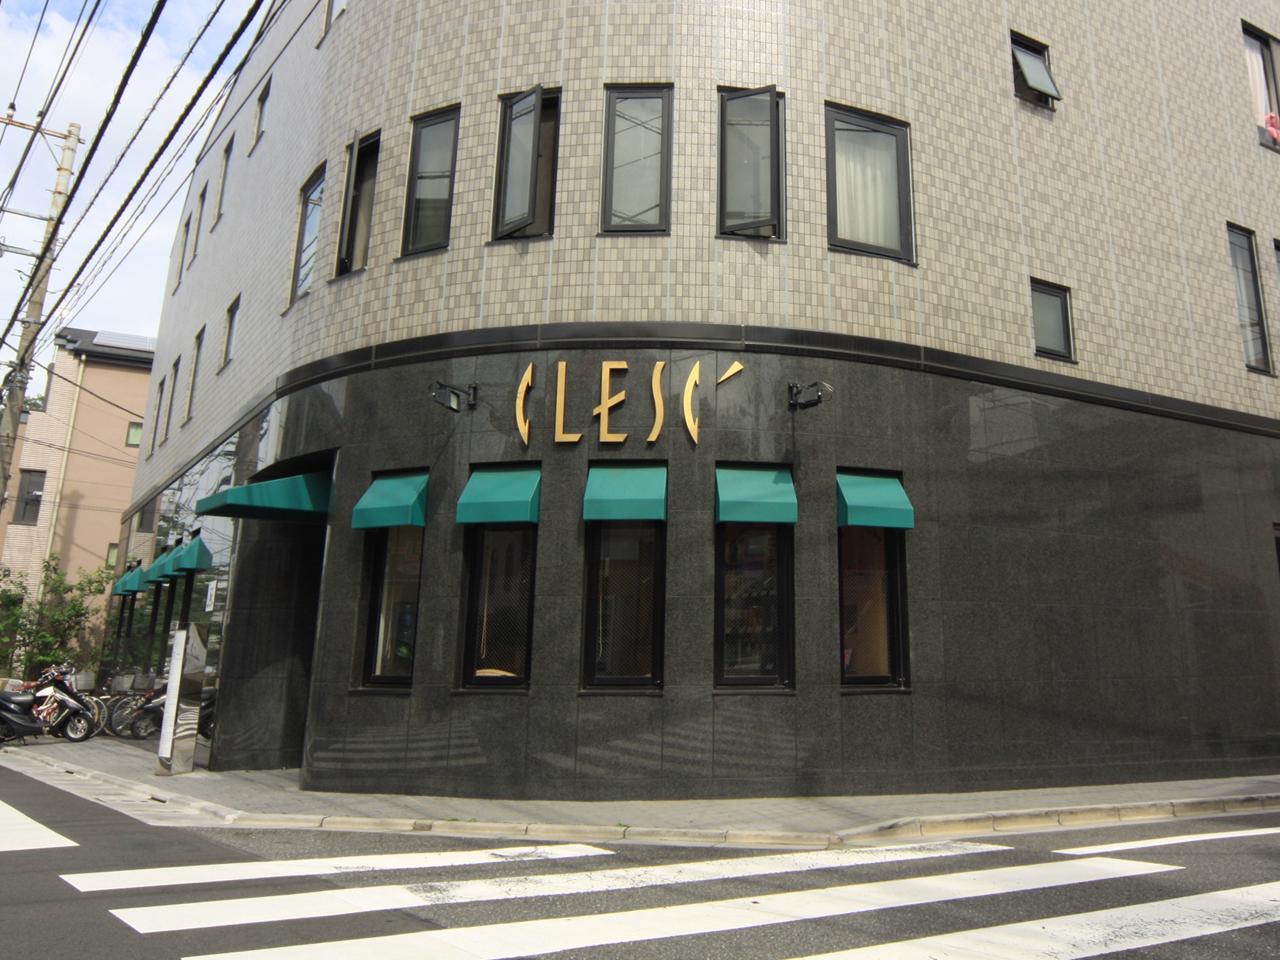 Clesc 東武練馬店 アシスタント 東京都 アシスタント 株式会社 クレス エアジョブツアー Air Job Tour